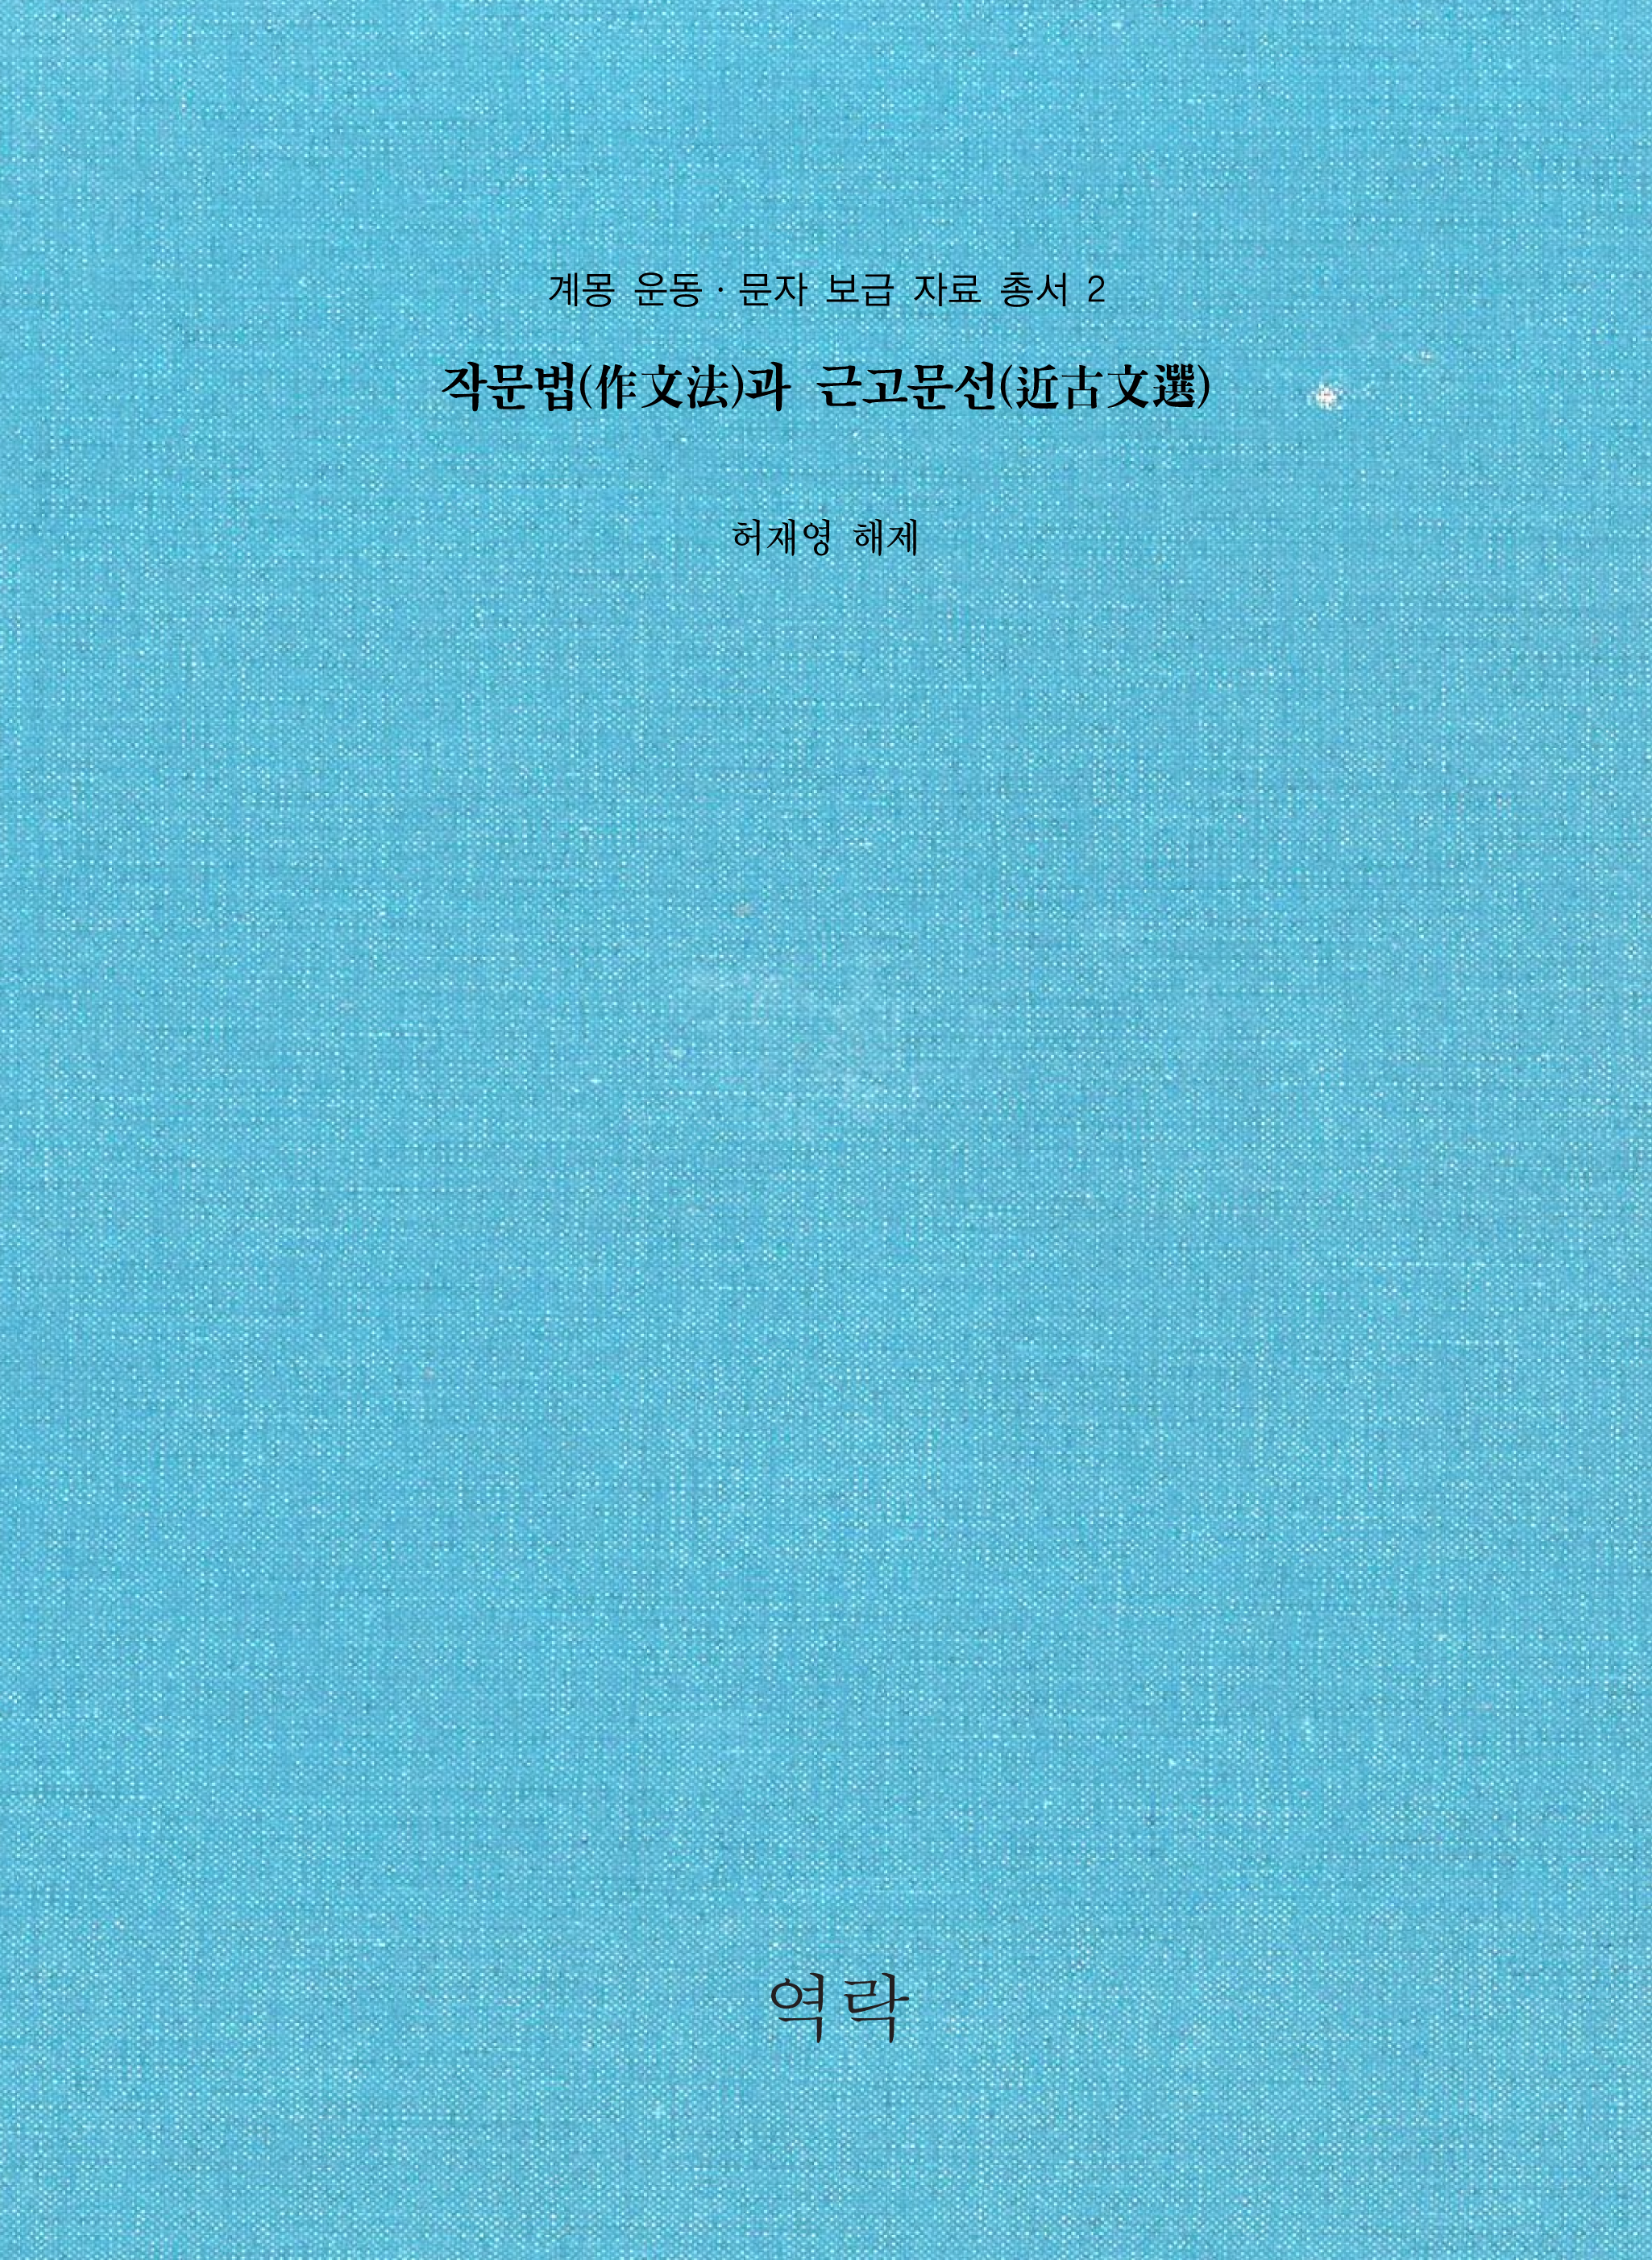 계몽 운동ㆍ문자 보급 자료 총서 2권